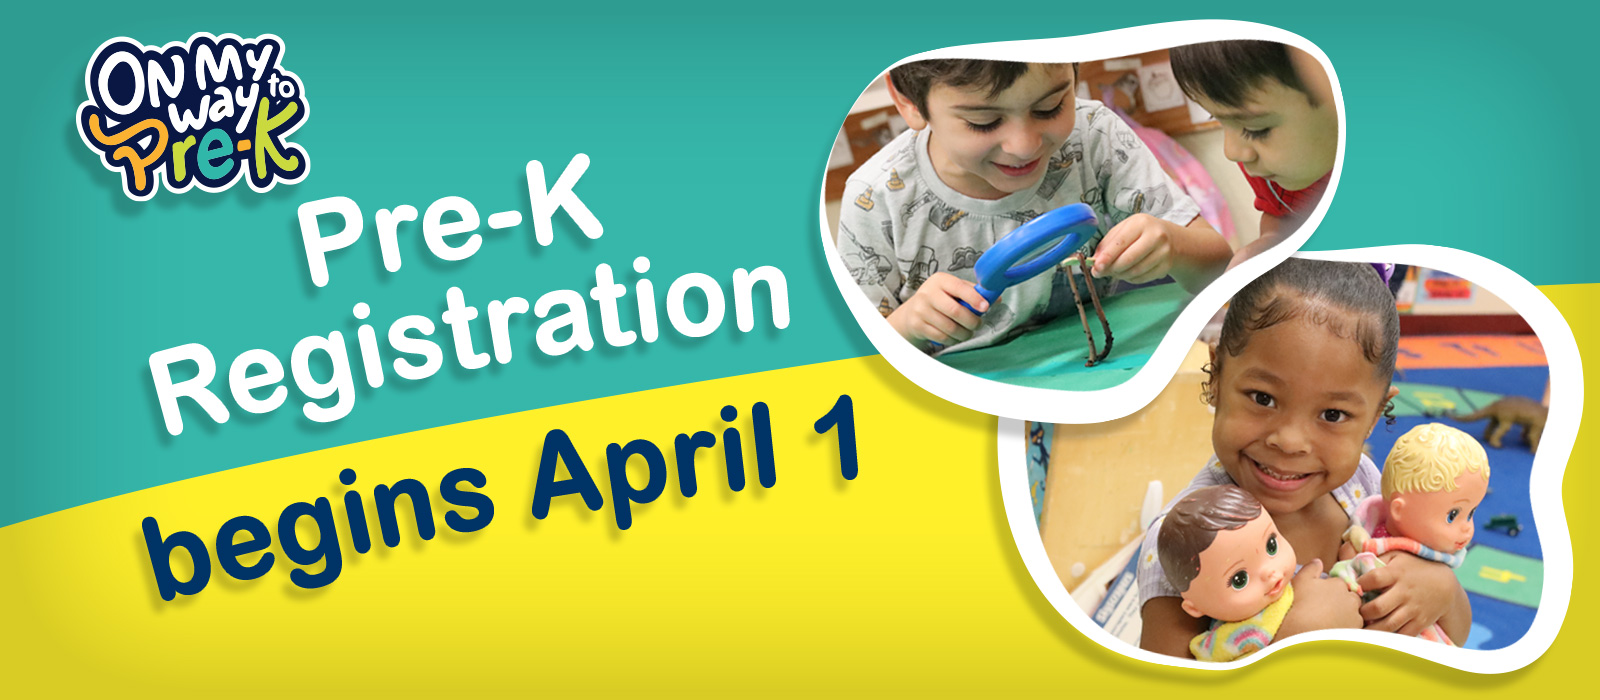 Pre-K Registration begins April 1